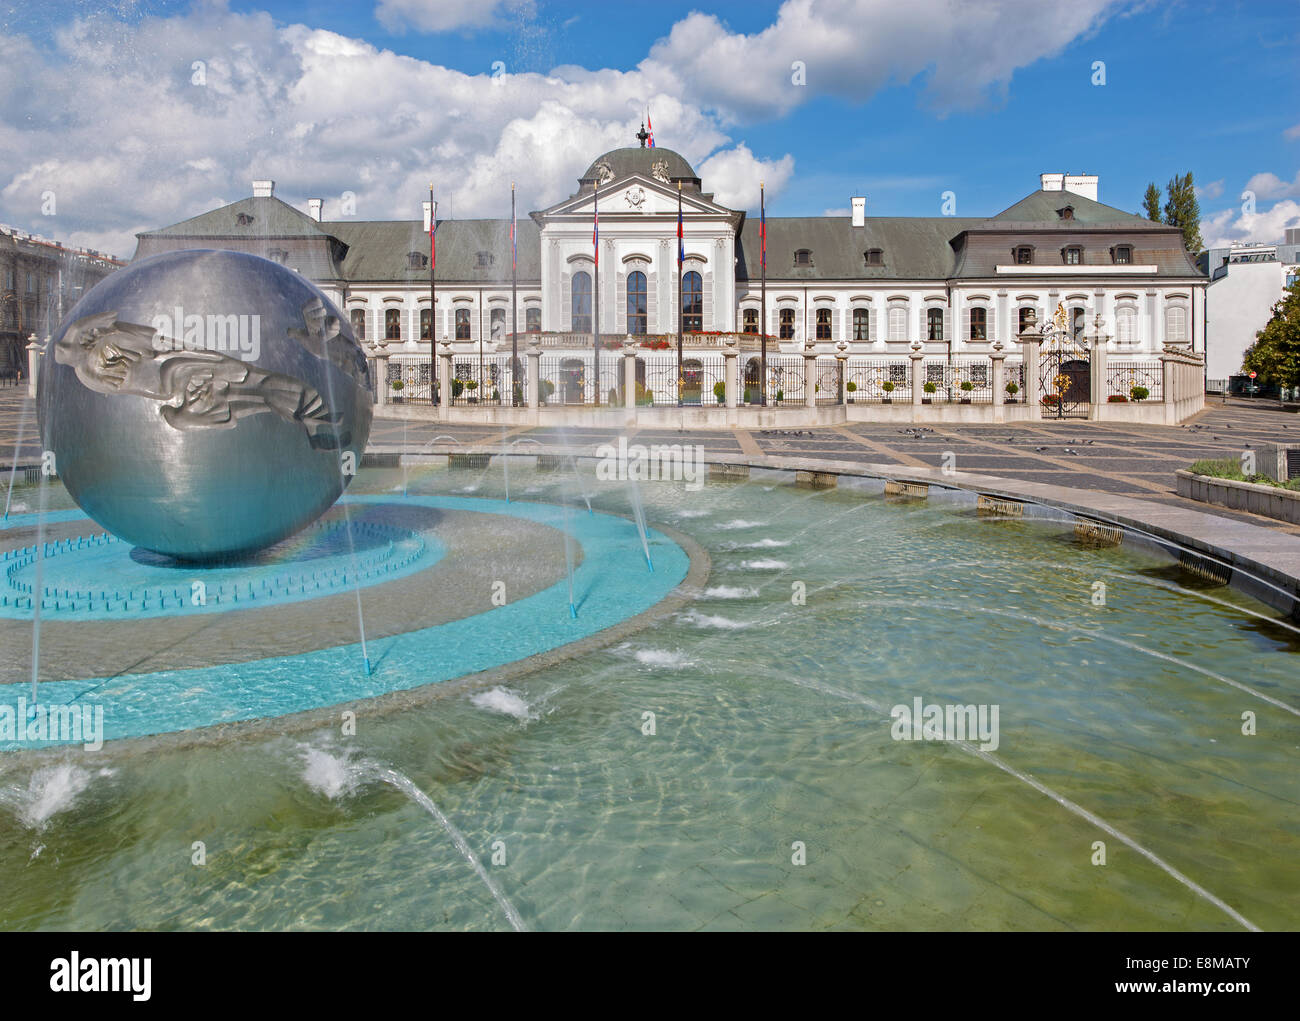 BRATISLAVA, Slovaquie - 21 septembre 2014 : Les présidents (ou Grasalkovic) palace et la fontaine "La jeunesse" par le sculpteur Tibor Bartfay Banque D'Images